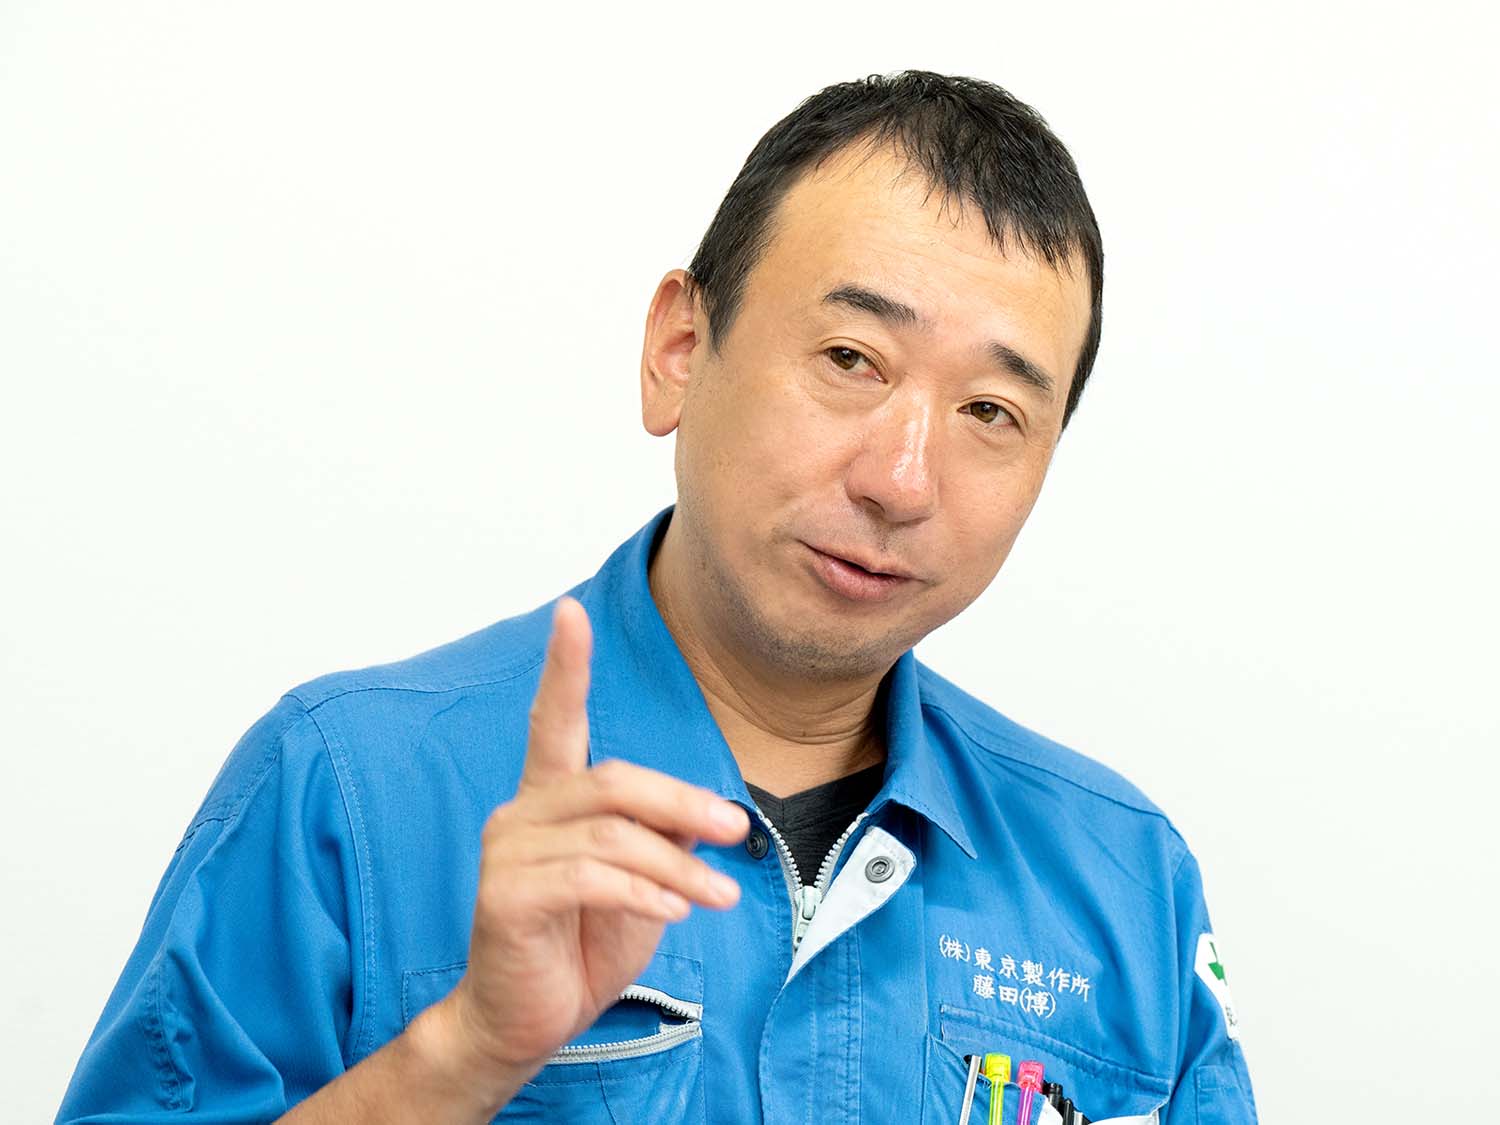 Mr. Hiroshi Fujita